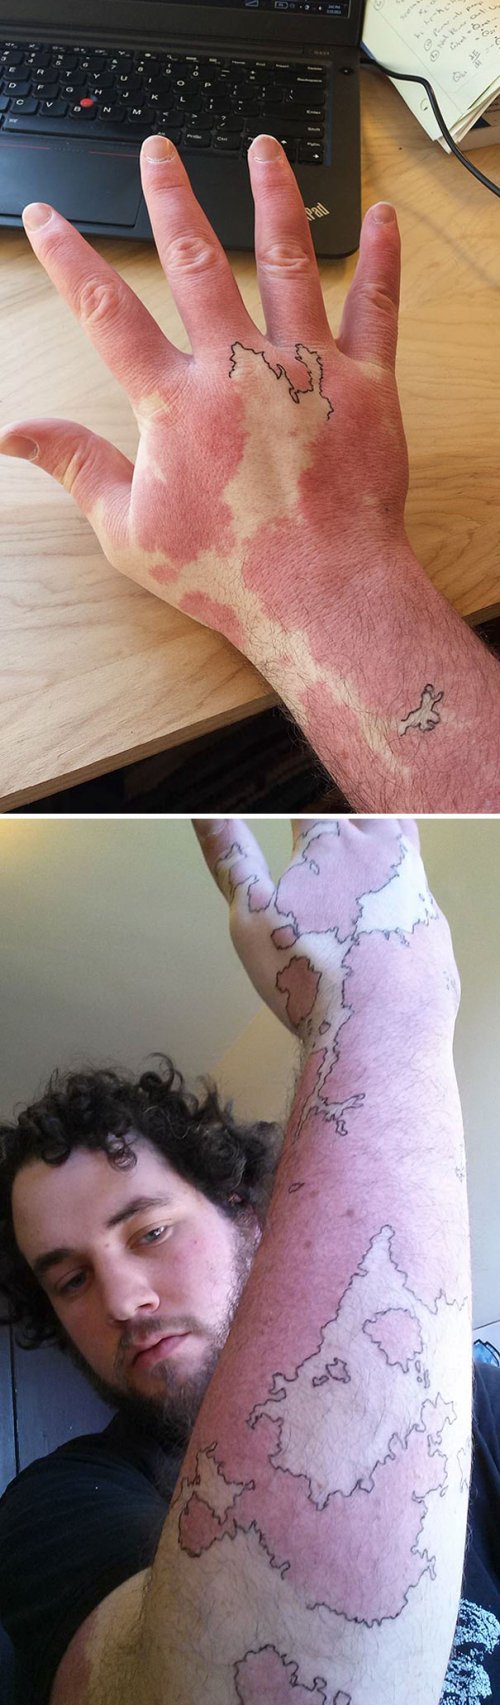 Кавер-ап тату, умело обыгрывающие и скрывающие родимые пятна (37 фото)